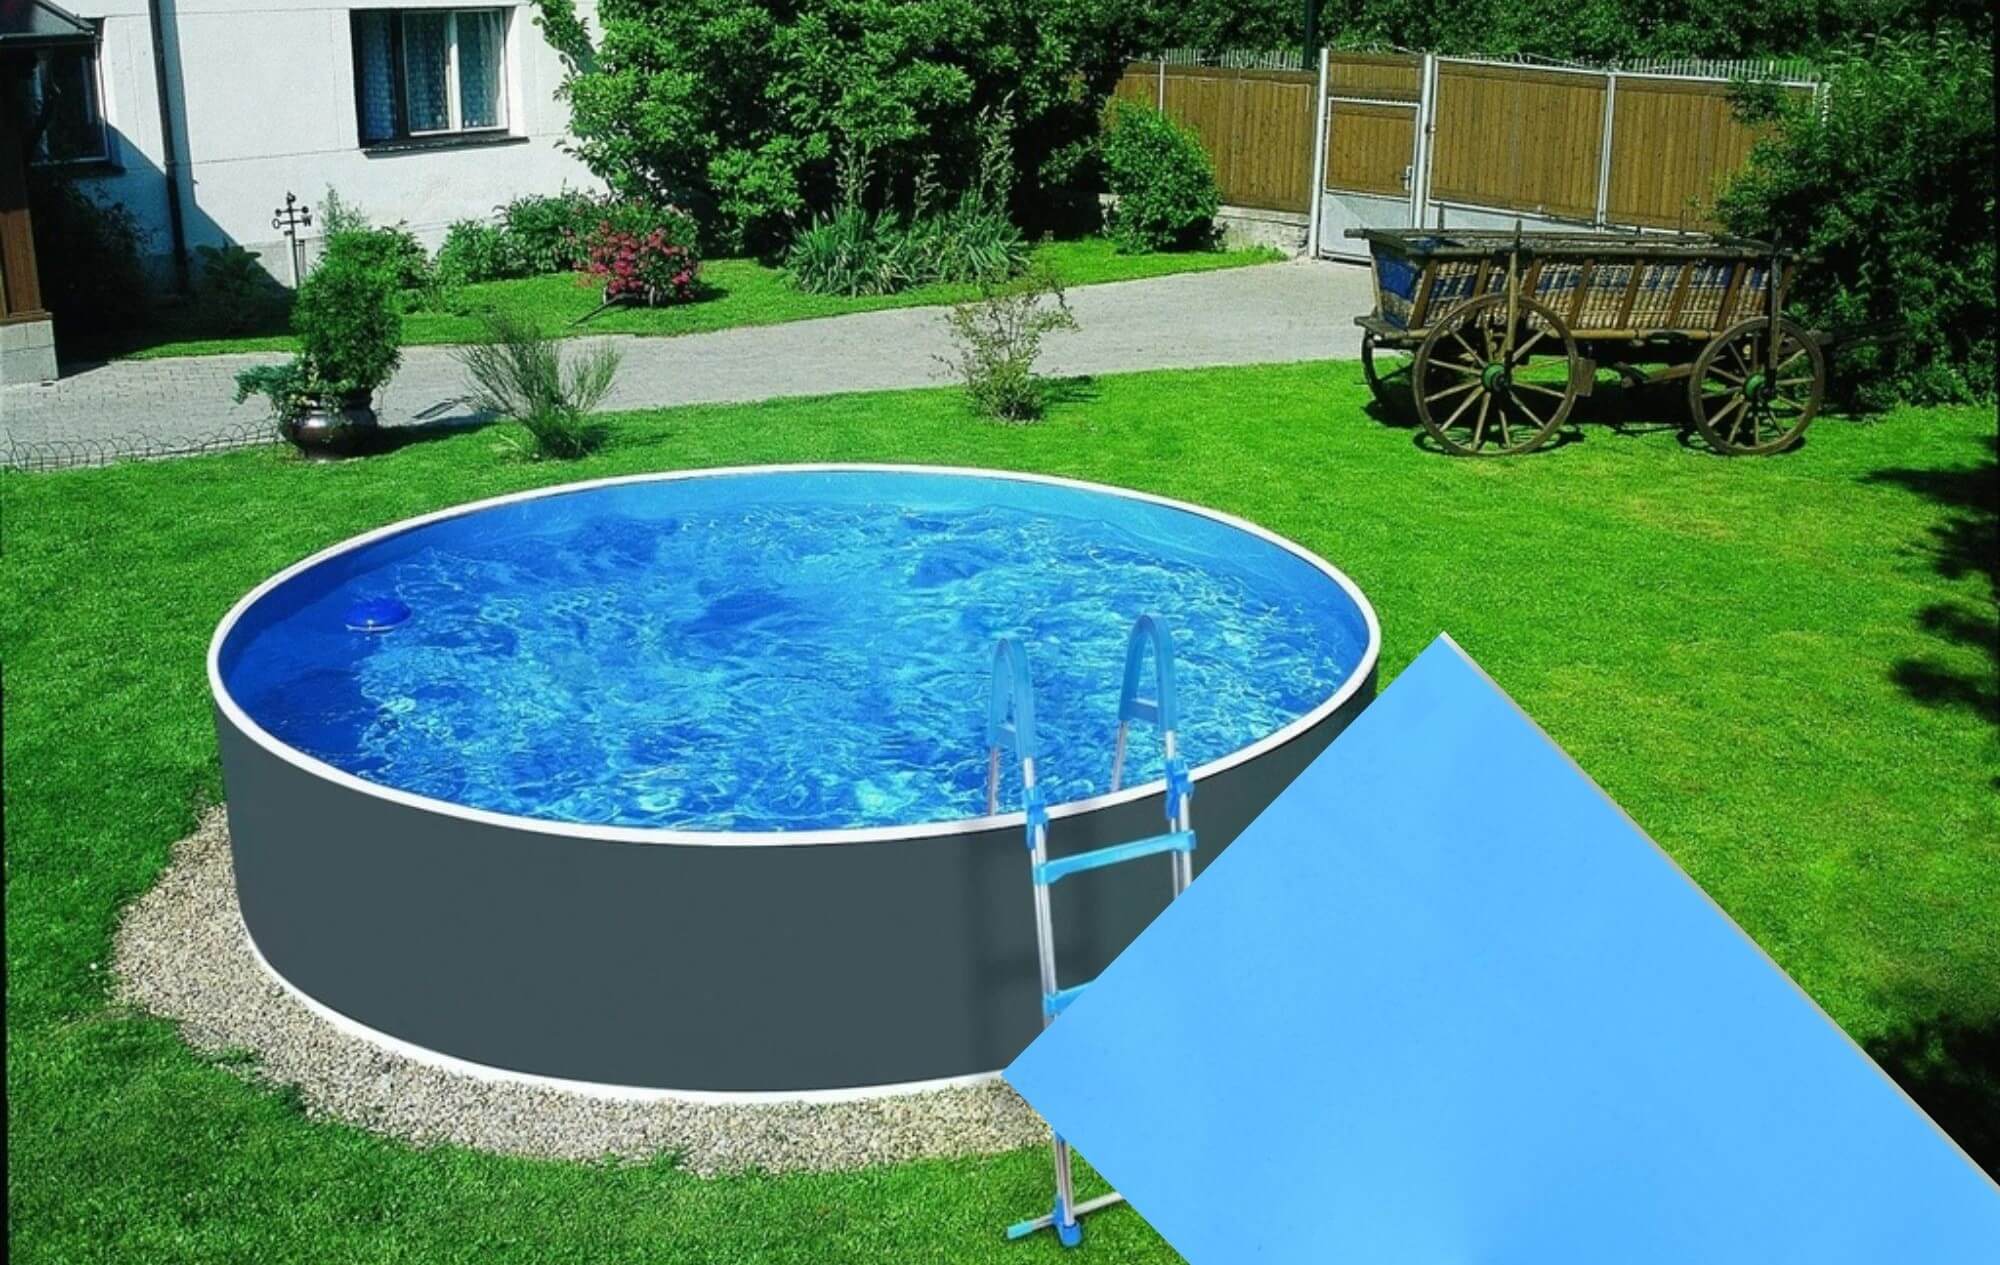 Planet Pool 30713 Náhradná bazénová fólia Blue pre bazén priemer 3,6 x 1,1 m